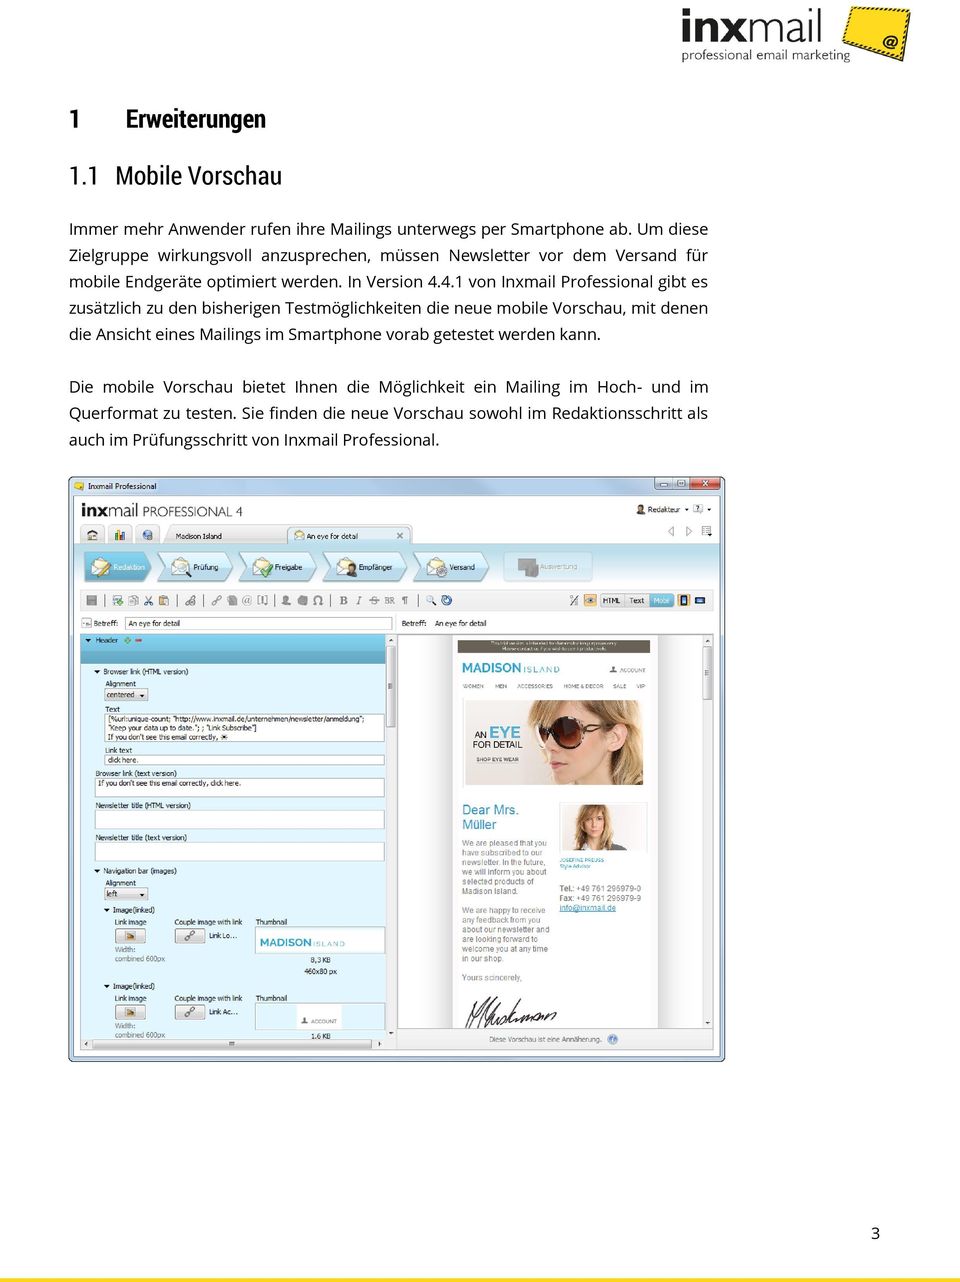 4.1 von Inxmail Professional gibt es zusätzlich zu den bisherigen Testmöglichkeiten die neue mobile Vorschau, mit denen die Ansicht eines Mailings im